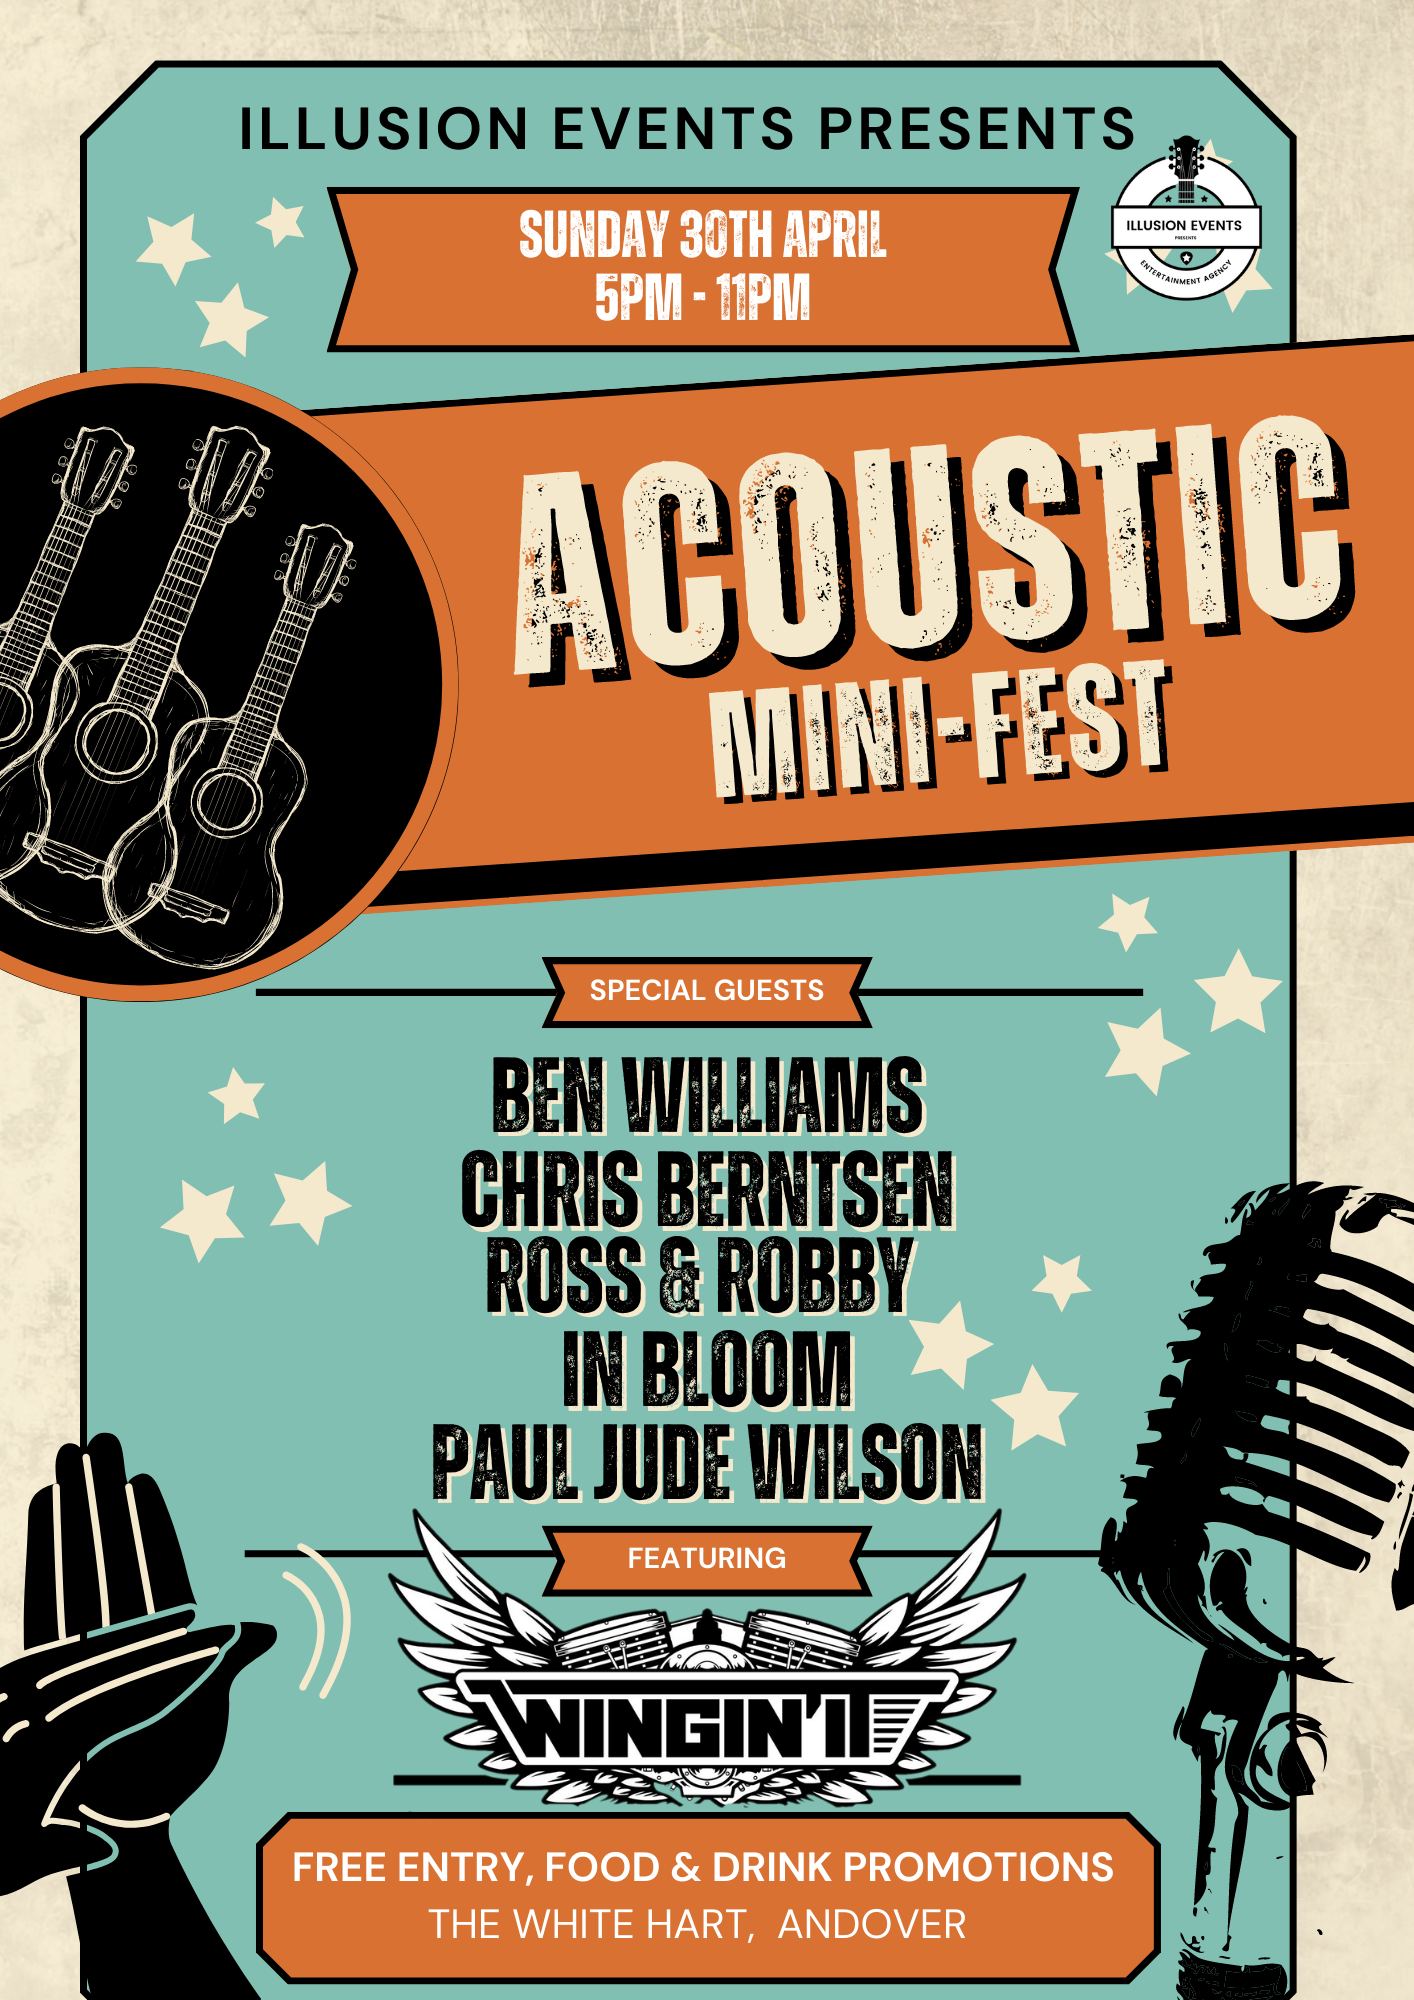 Acoustic Mini-Fest: Ben Williams + Chris Berntsen + Ross & Robby + In Bloom + Paul Jude Wilson + WINGIN' IT